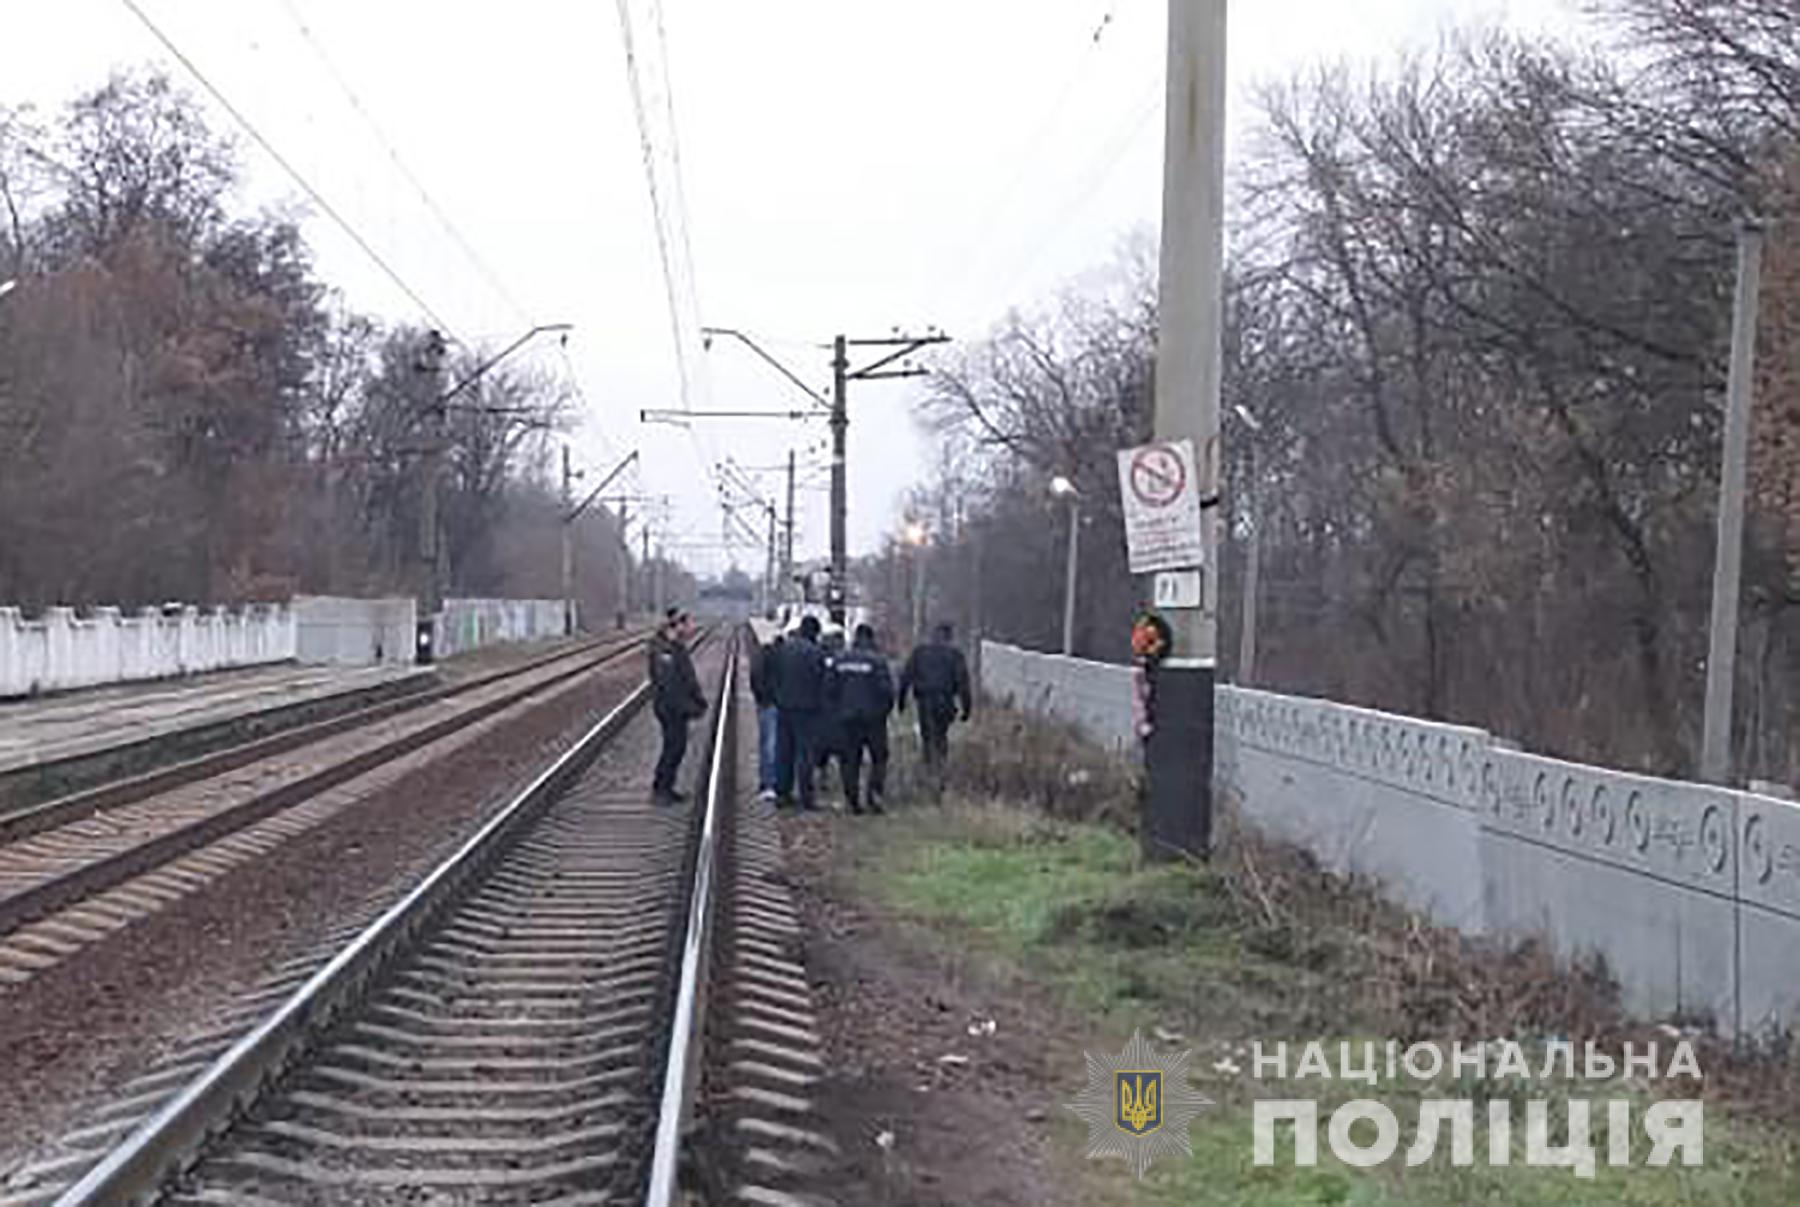 Разговаривал по телефону: стали известны подробности гибели мужчины под поездом в Запорожье (ФОТО)